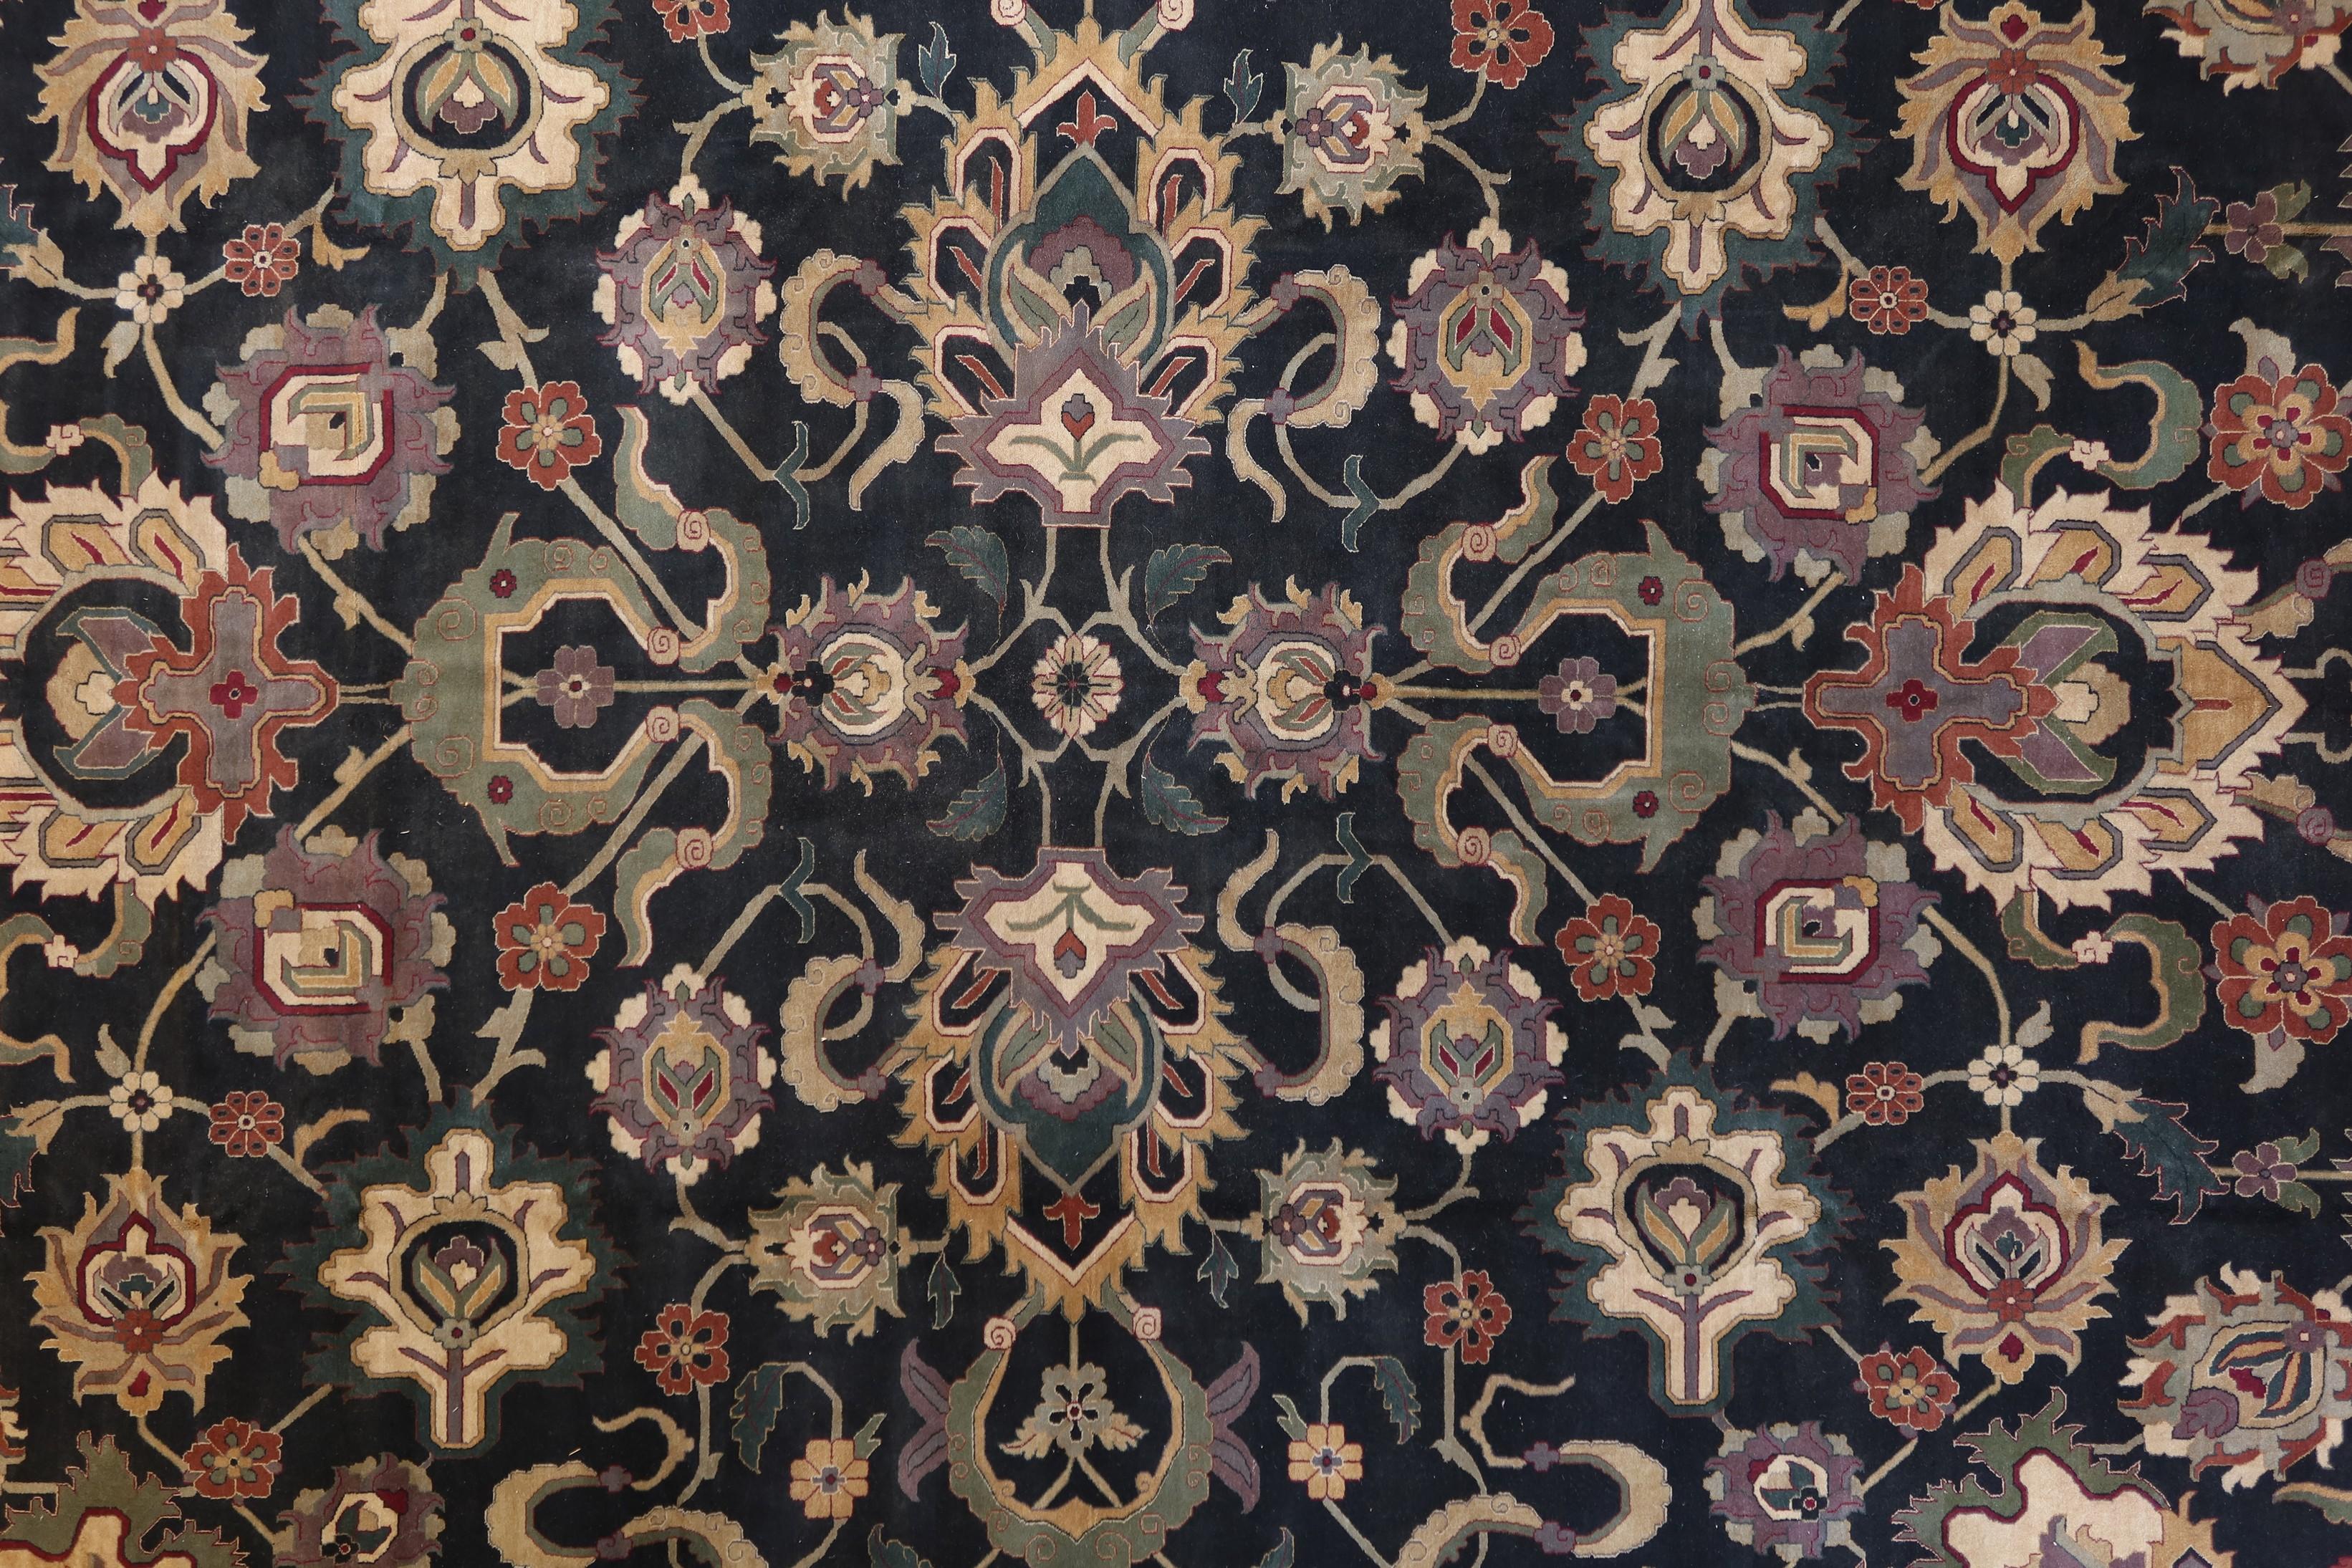 Die Woven Arts-Teppichkollektion ist eine sehr genaue Nachbildung der originalen indischen Agra-Hof-Teppiche aus dem 17. und 18. Hochwertiges neuseeländisches Garn wird in feiner Handarbeit zu diesen luxuriösen Teppichen geknüpft, die ungewöhnlich